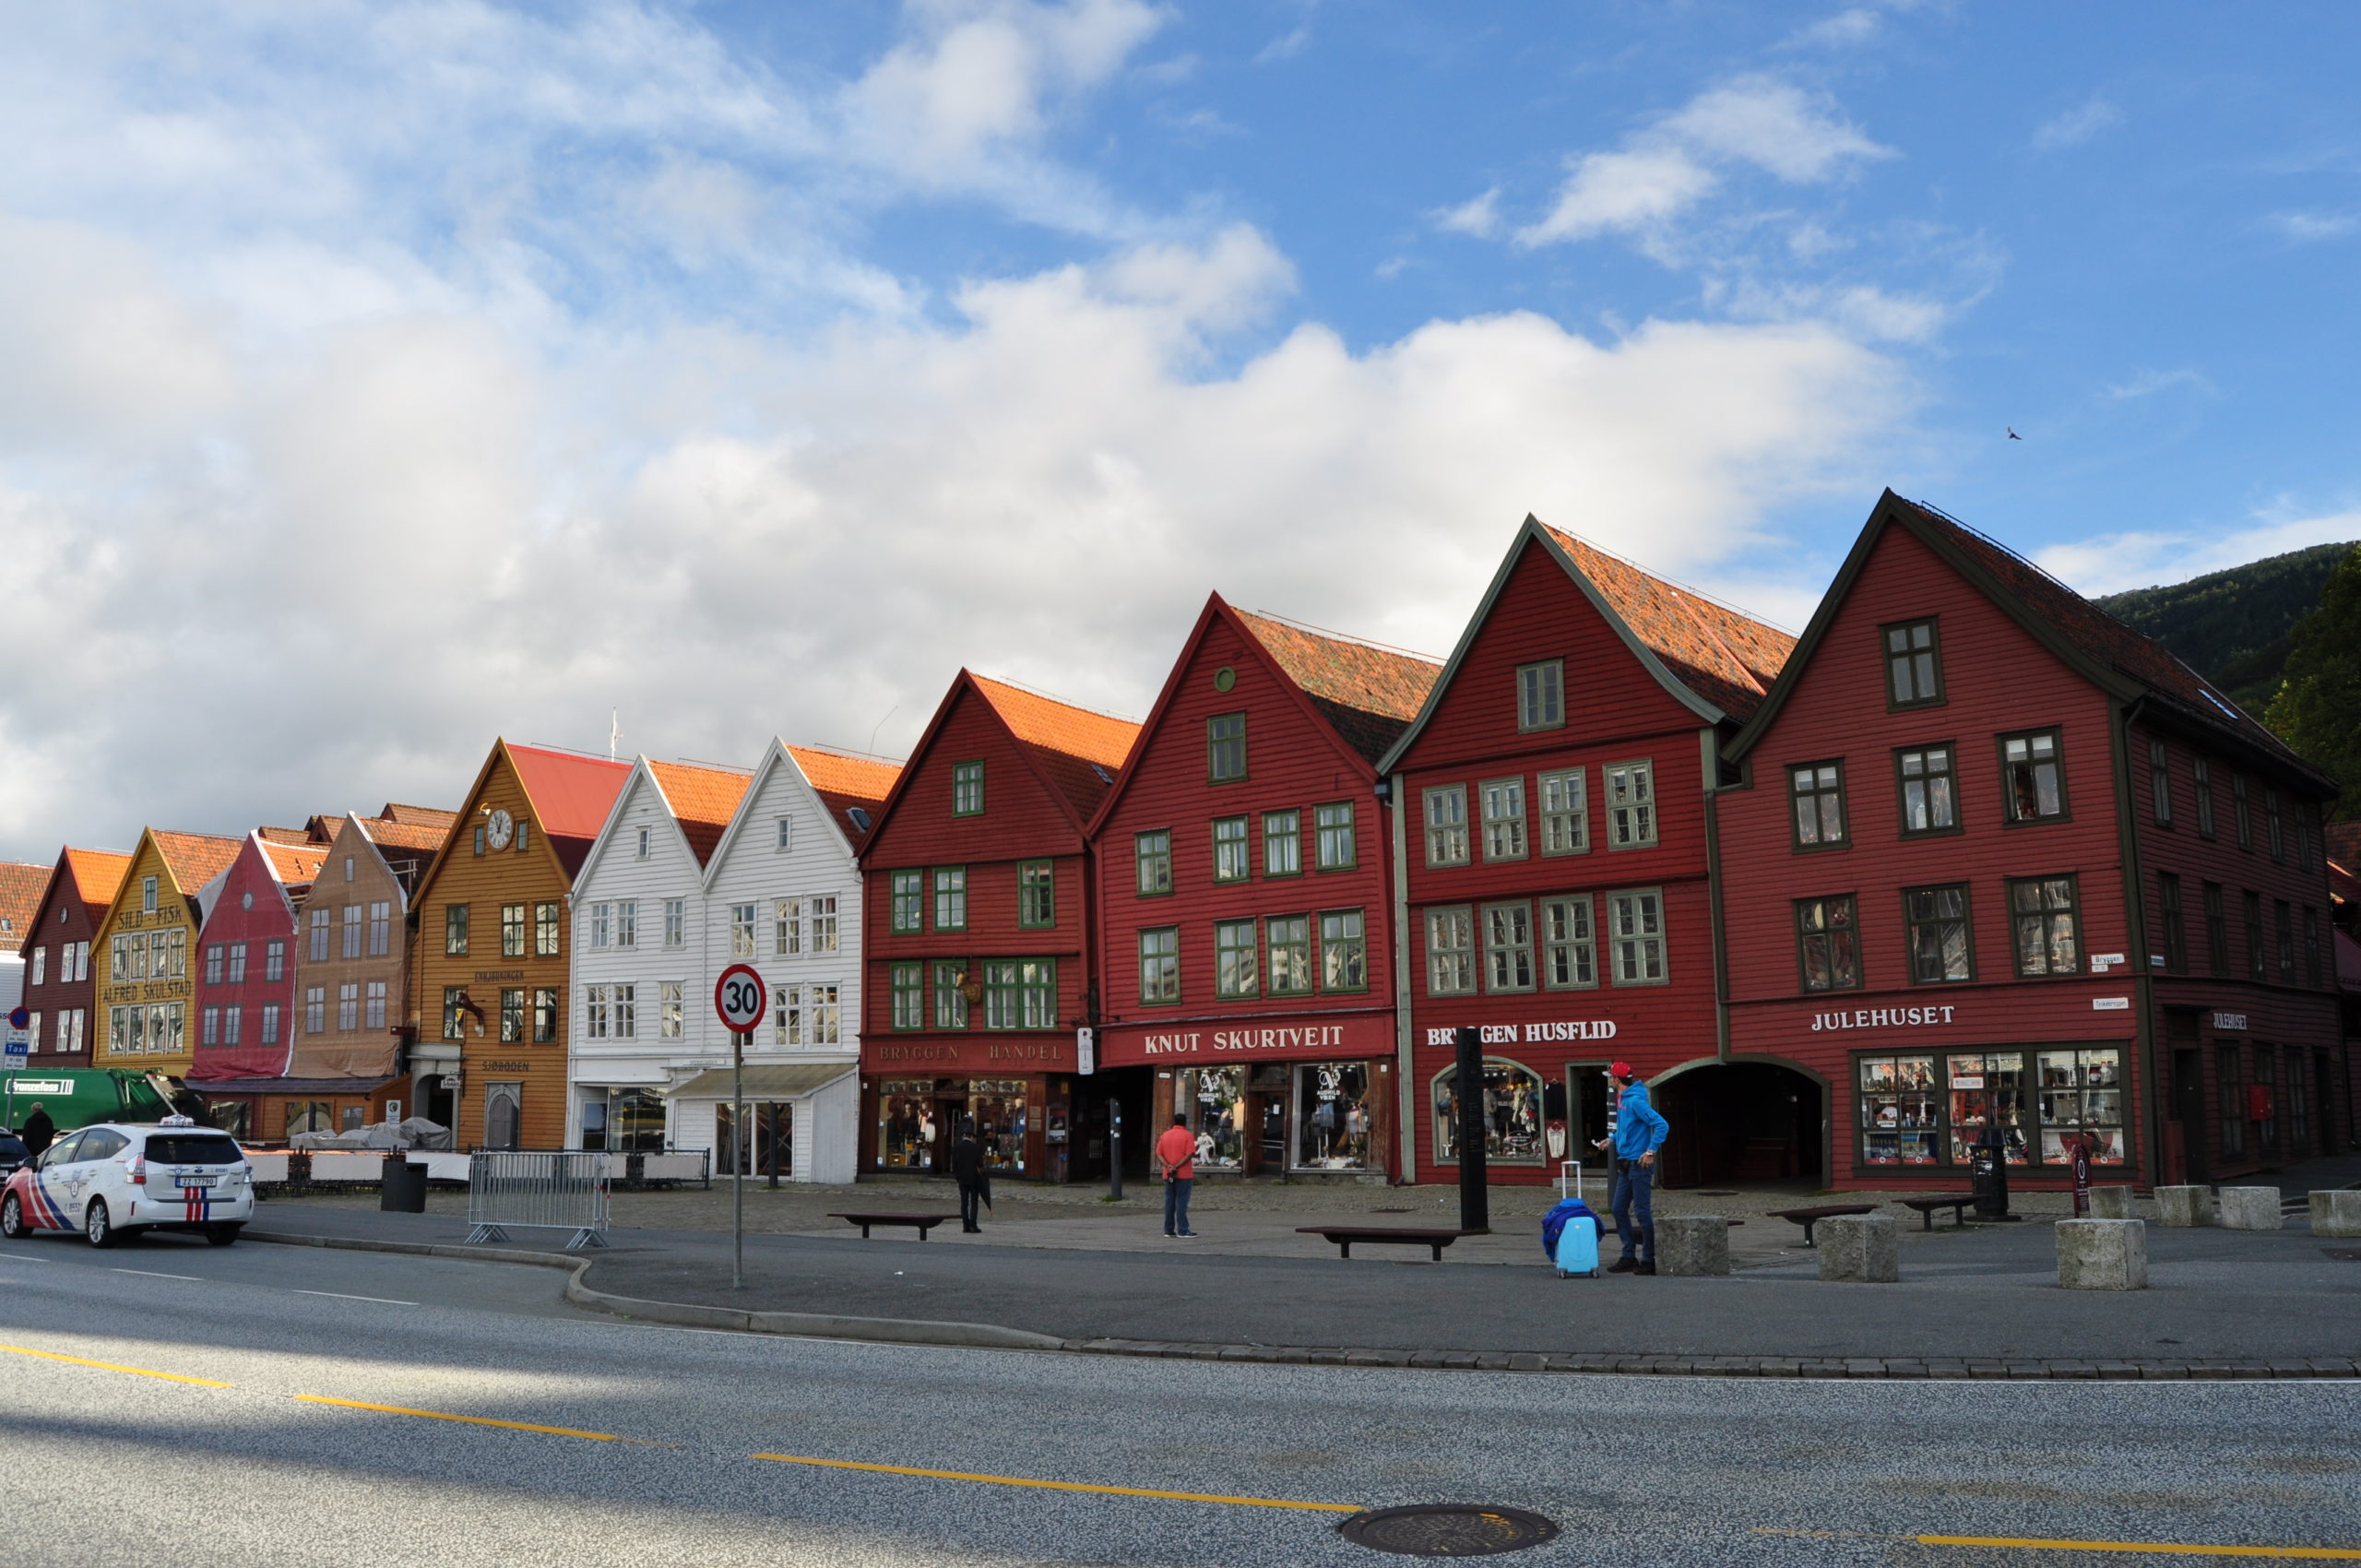 Neighbourhood of Bryggen